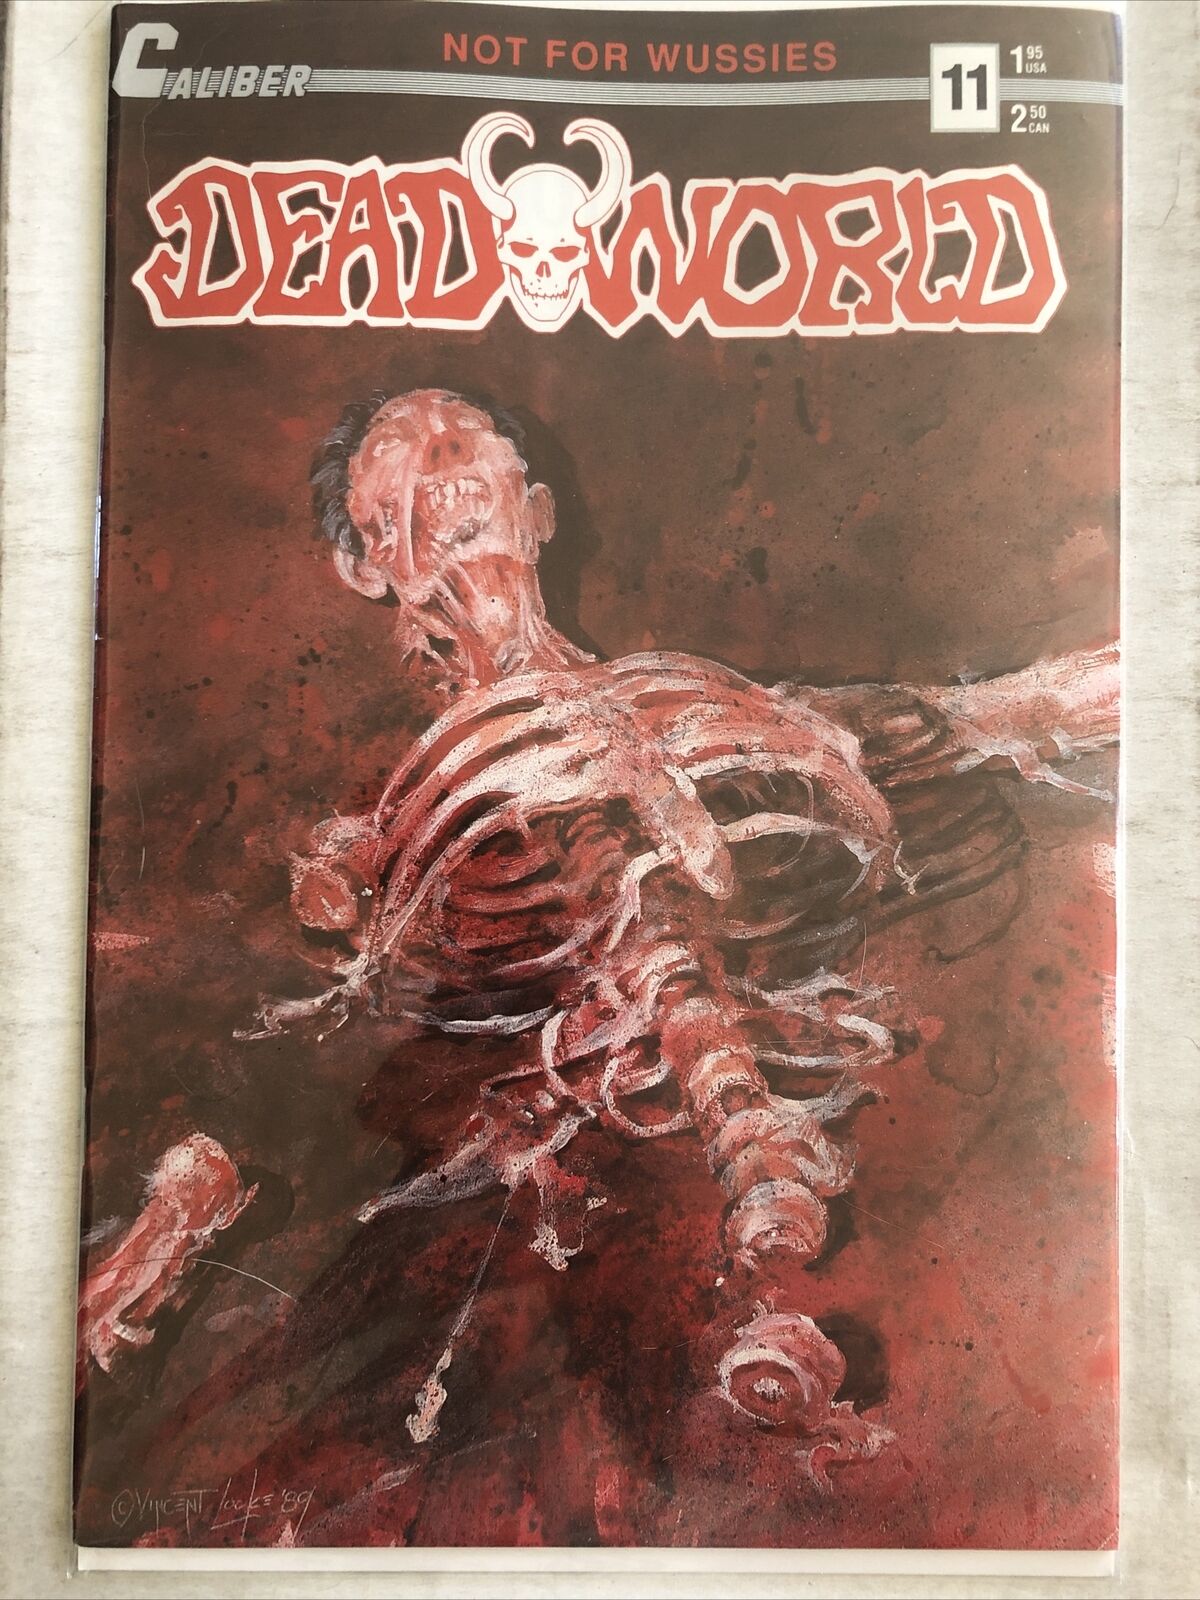 Deadworld Volume 1 12 Issue Comic Lot.  Caliber Press 11-21 And 23